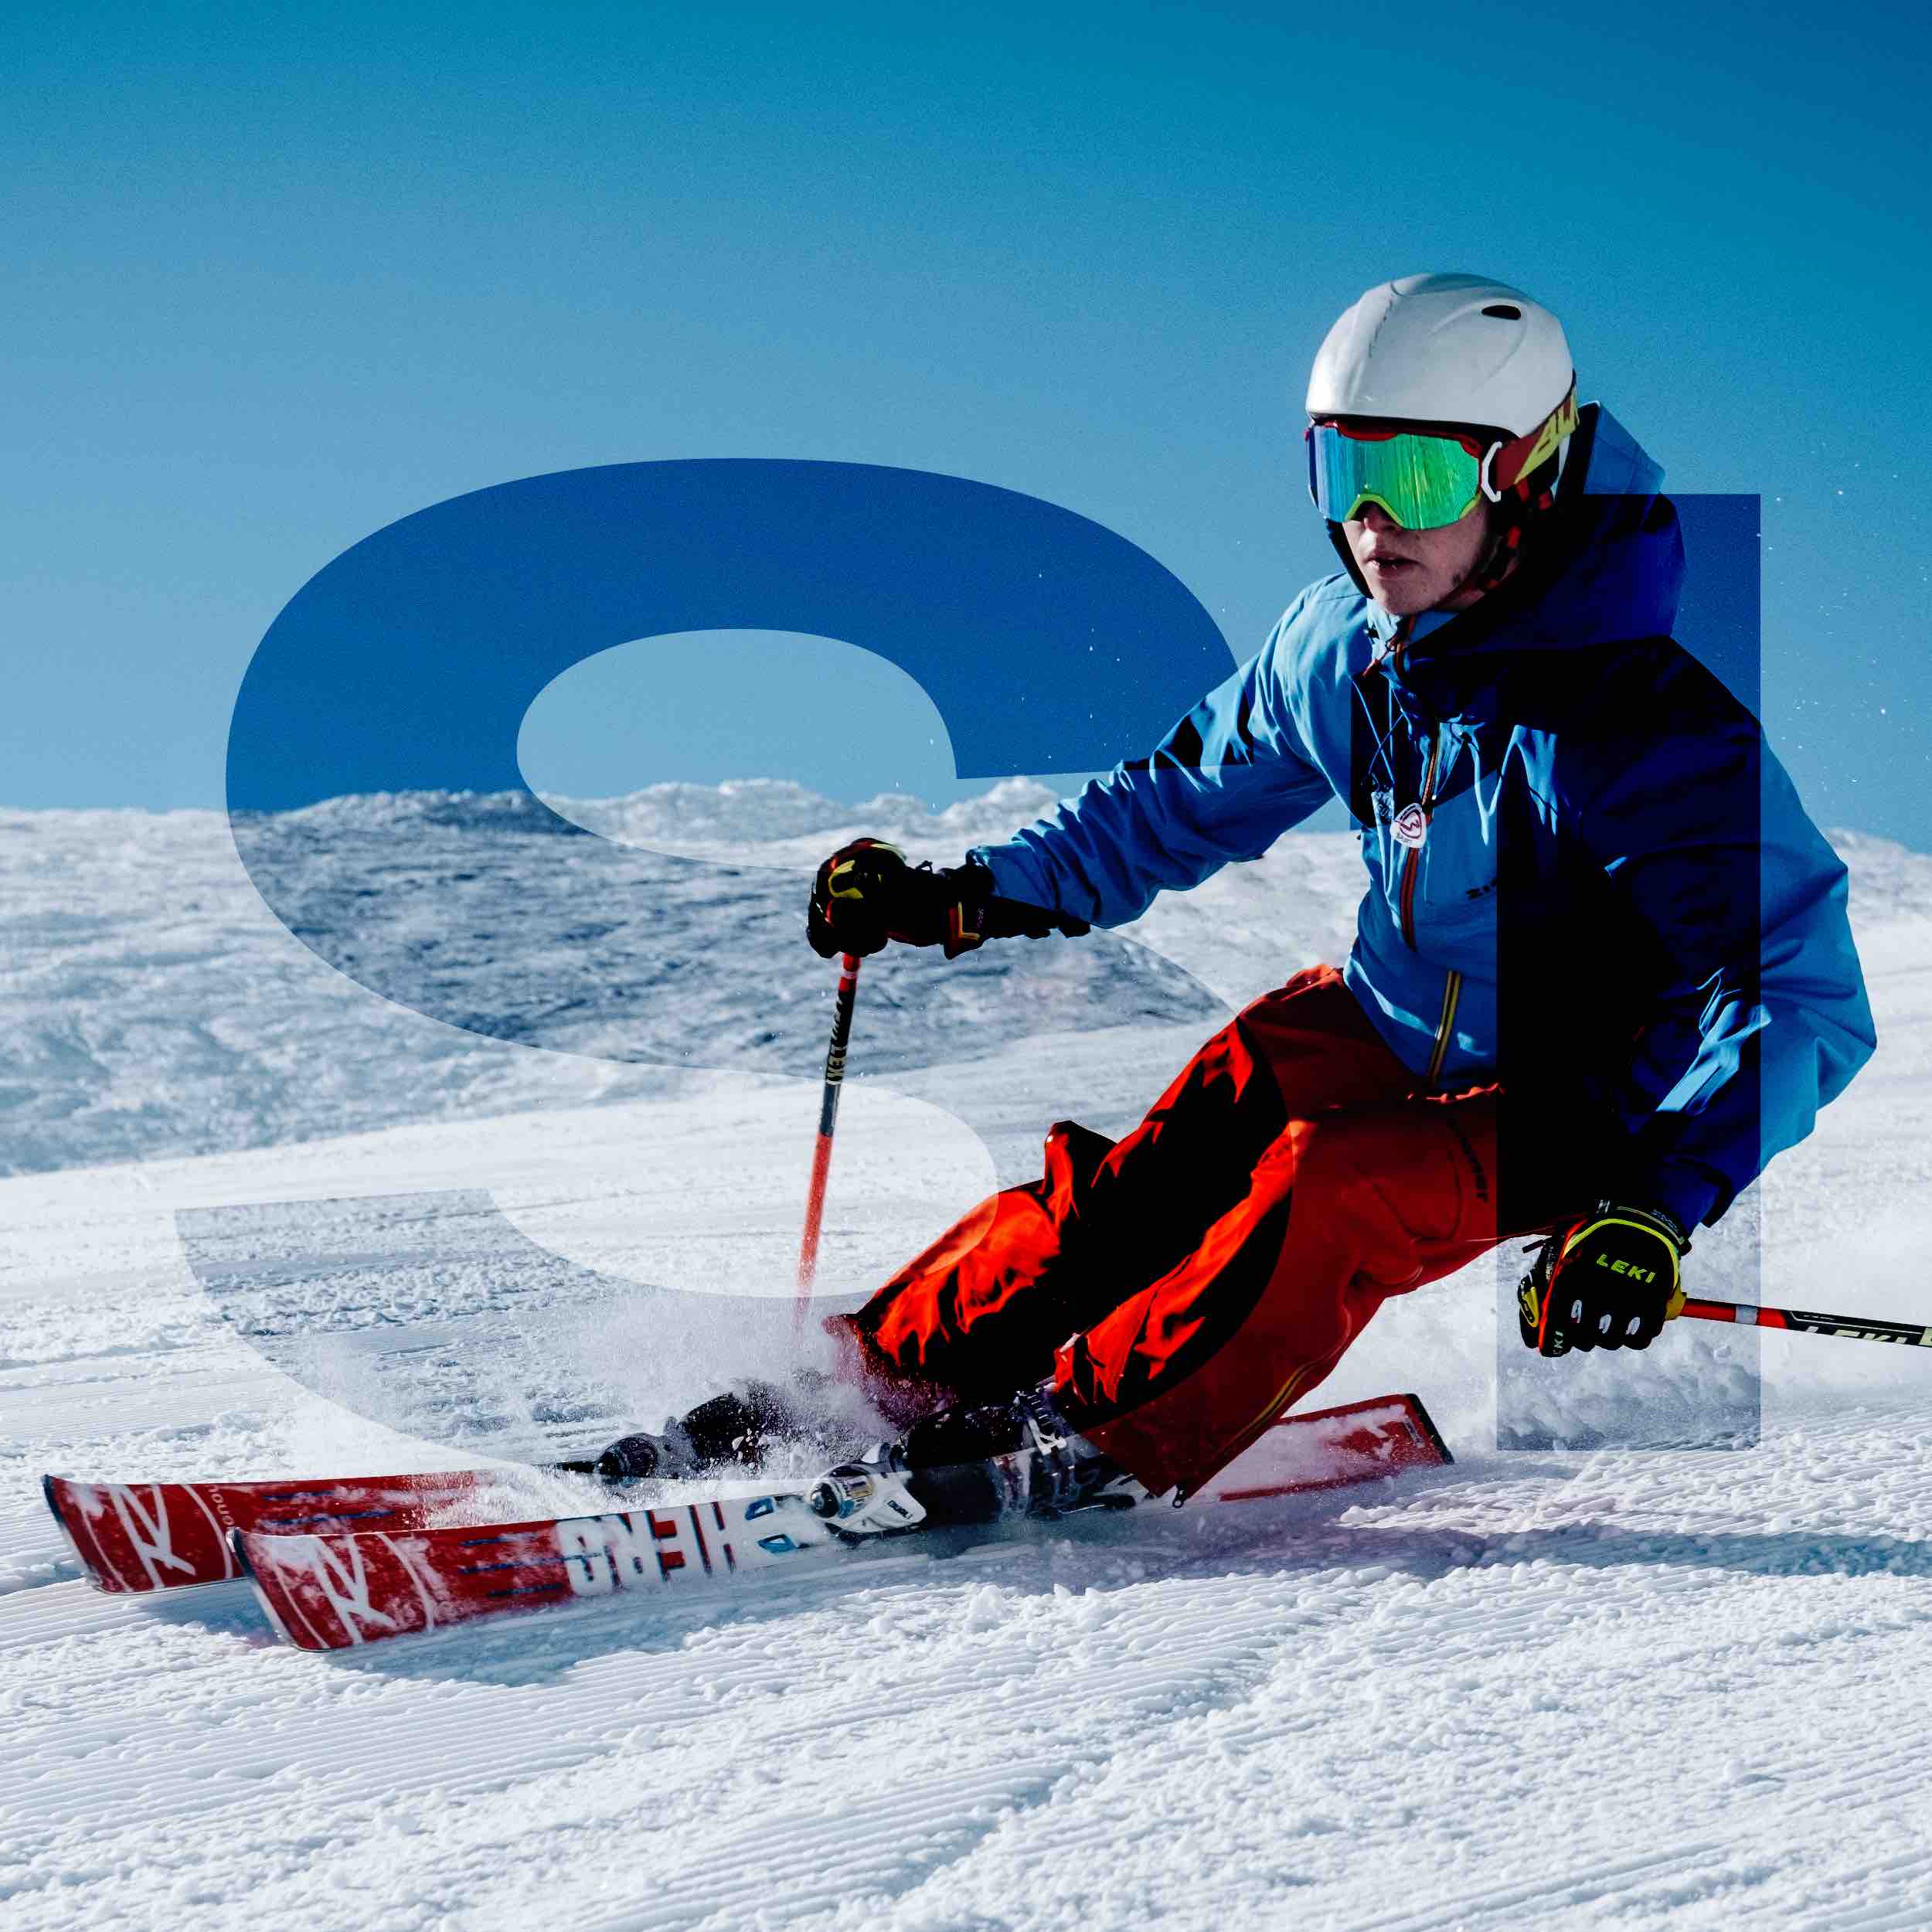 Spotlijster Simuleren Een hekel hebben aan SKIMEESTERS - Professioneel handmatig ski en snowboard onderhoud –  Skimeesters